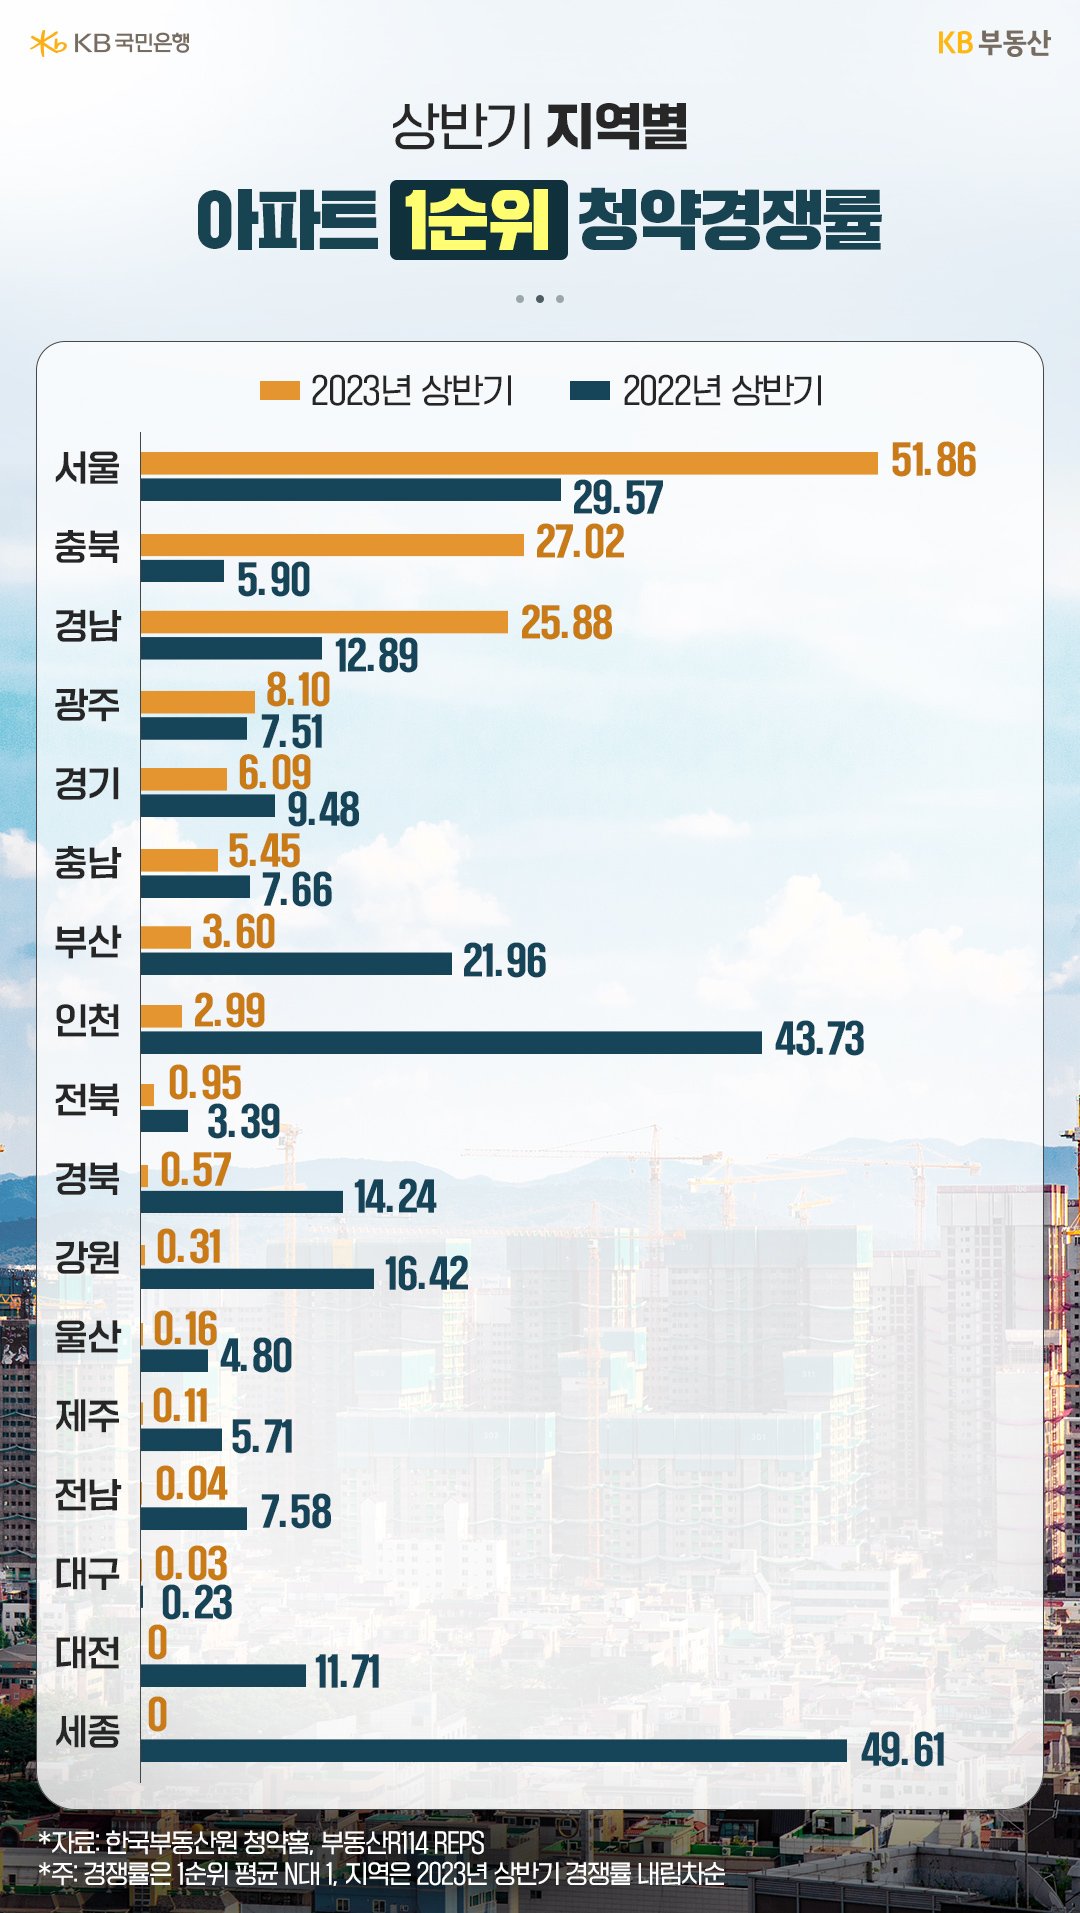 상반기 지역별 '아파트 1순위 청약경쟁률'을 나타낸 그래프이다. 서울의 경우 두 자릿수 이상의 1순위 청약경쟁률을 보인 반면, 몇몇 지방은 청약 미달이 속출했다.